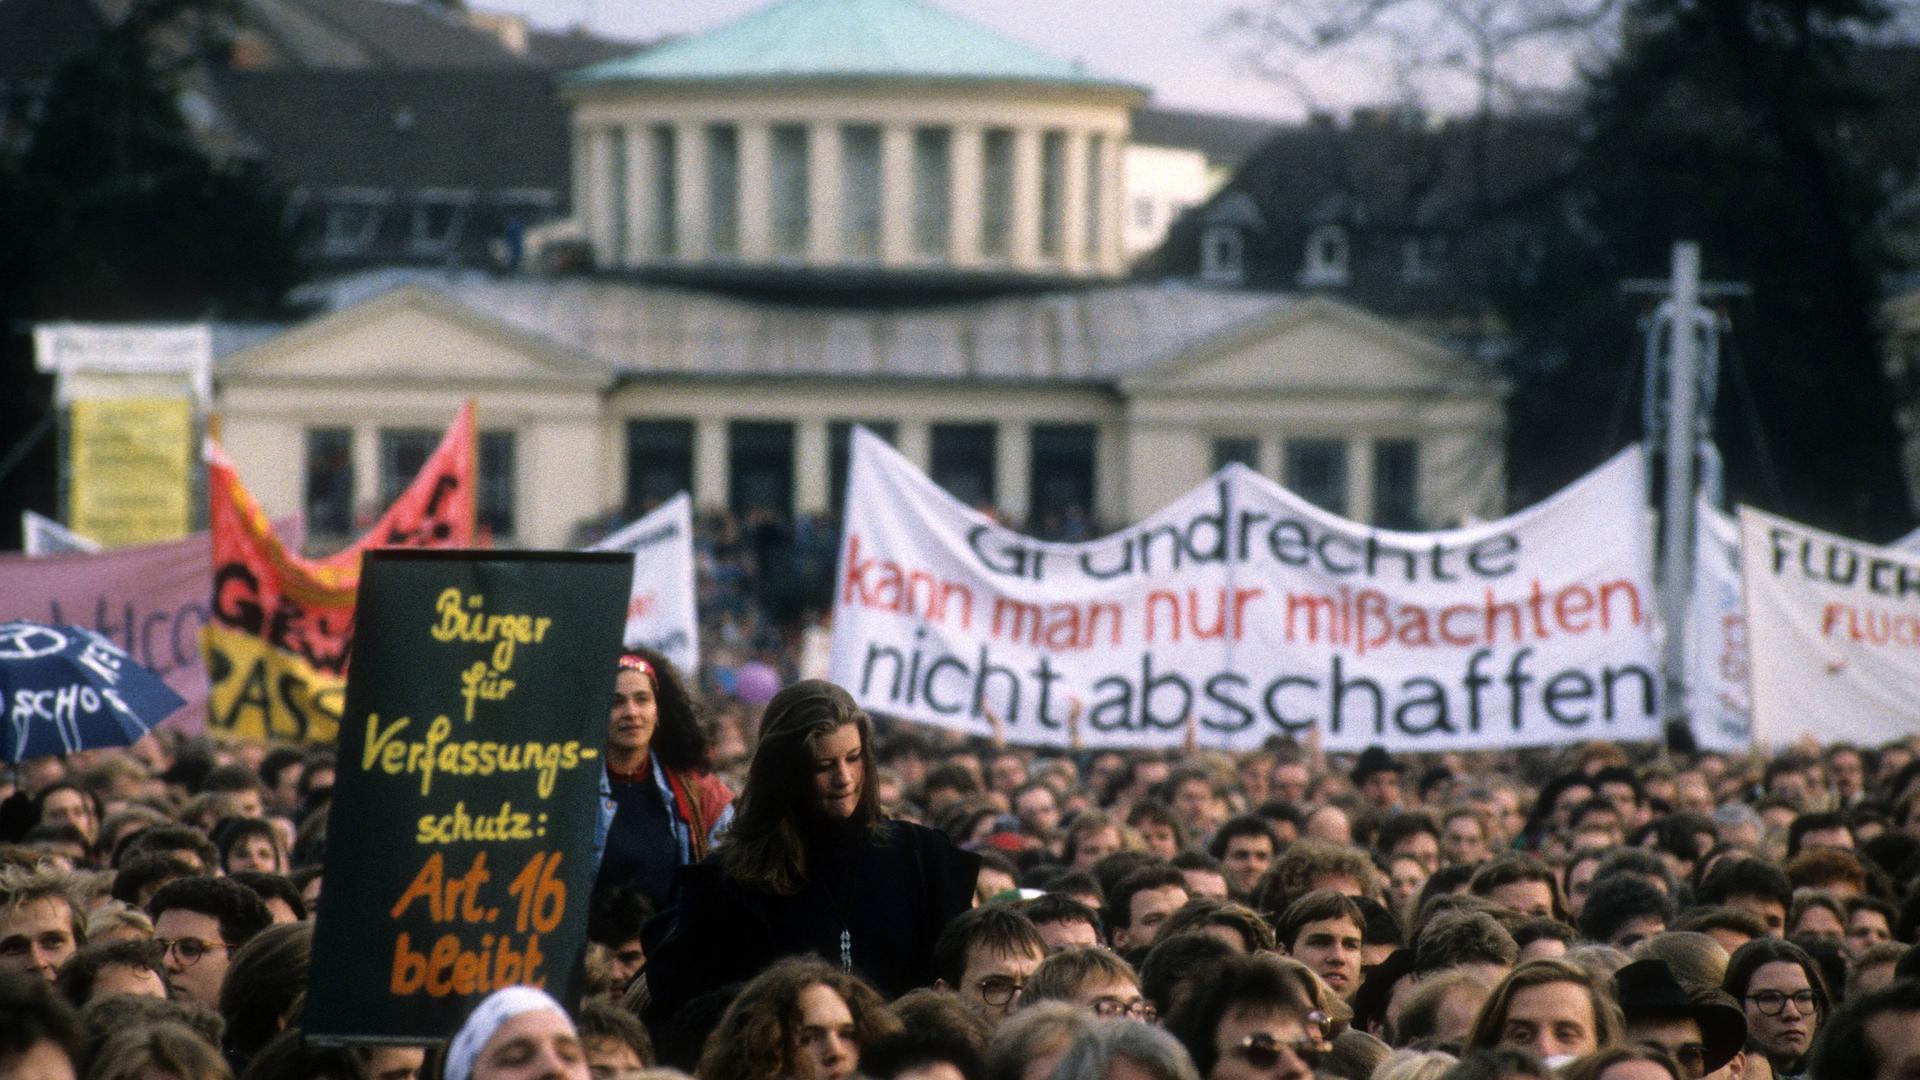 Eine Demo, die sich gegen den sogenannten Asylkompromiss richtet, das heißt, gegen die Neuregelung des Asylrechts im jahr 1993.